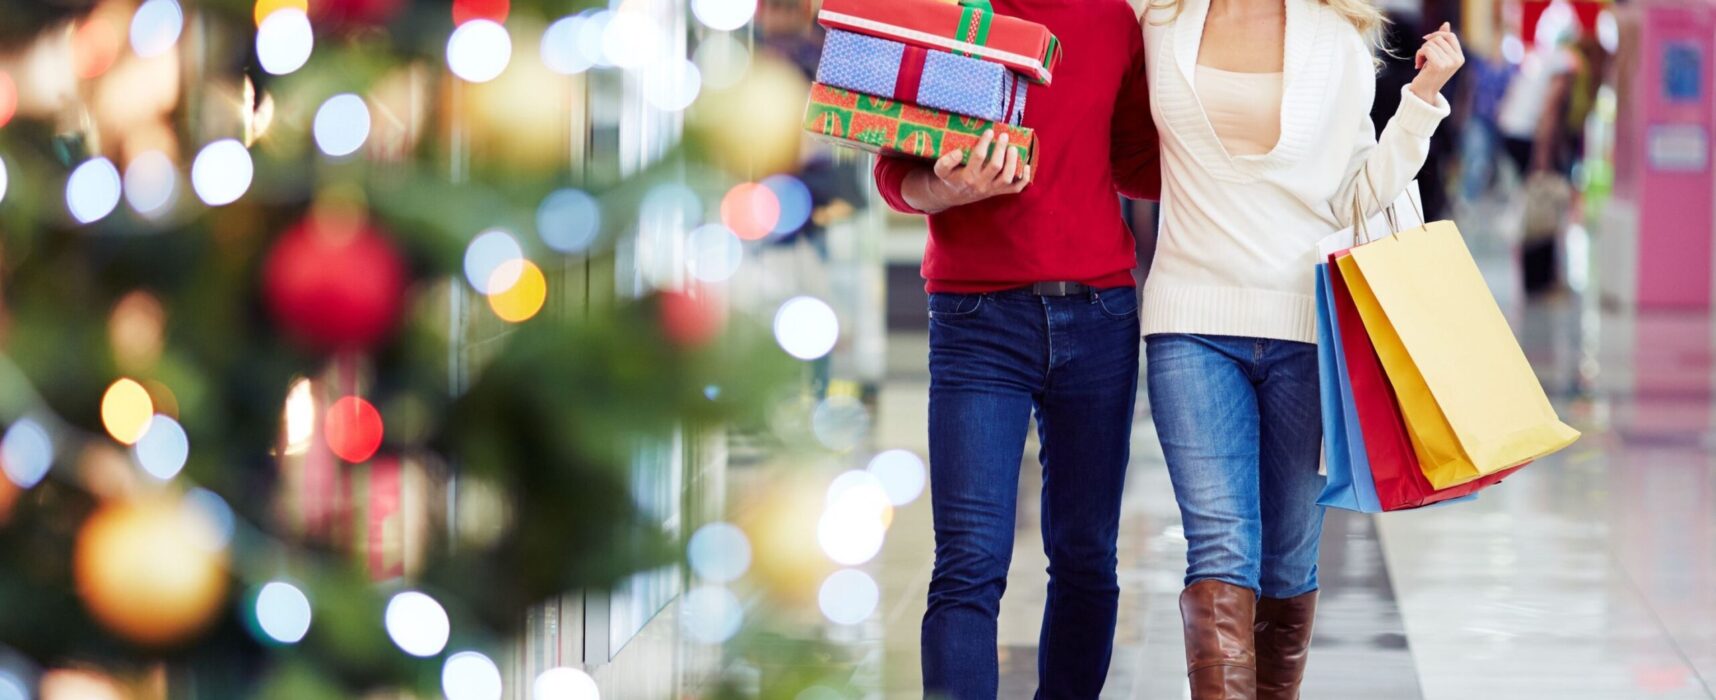 Vendite natalizie ed eventi in centro, la voce dei commercianti: “Pienamente soddisfatti”